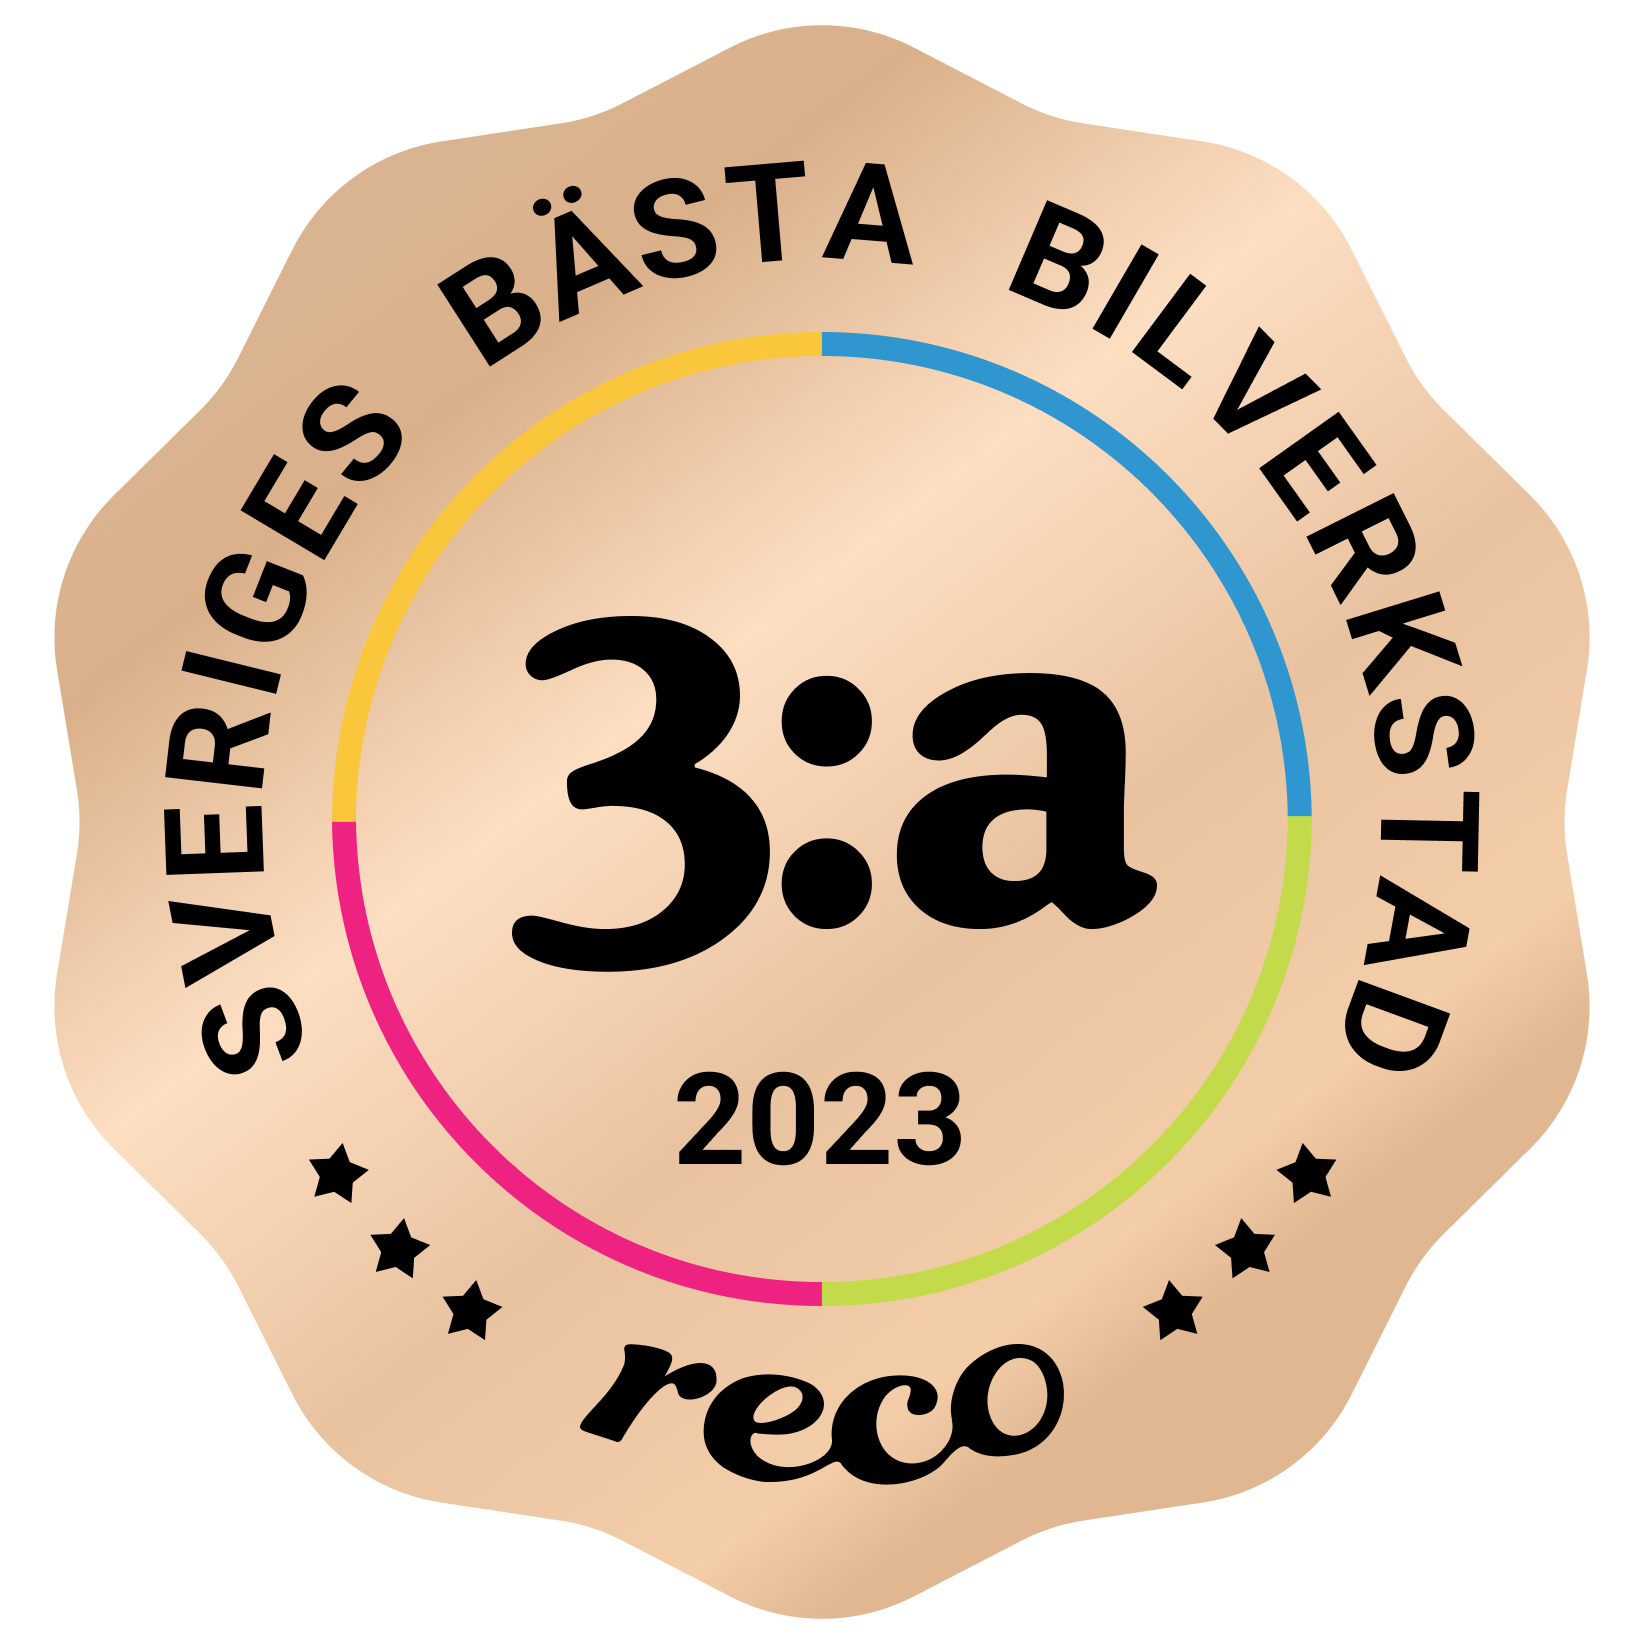 Bagde - Best in Sweden - Bilverkstad - Third@2x